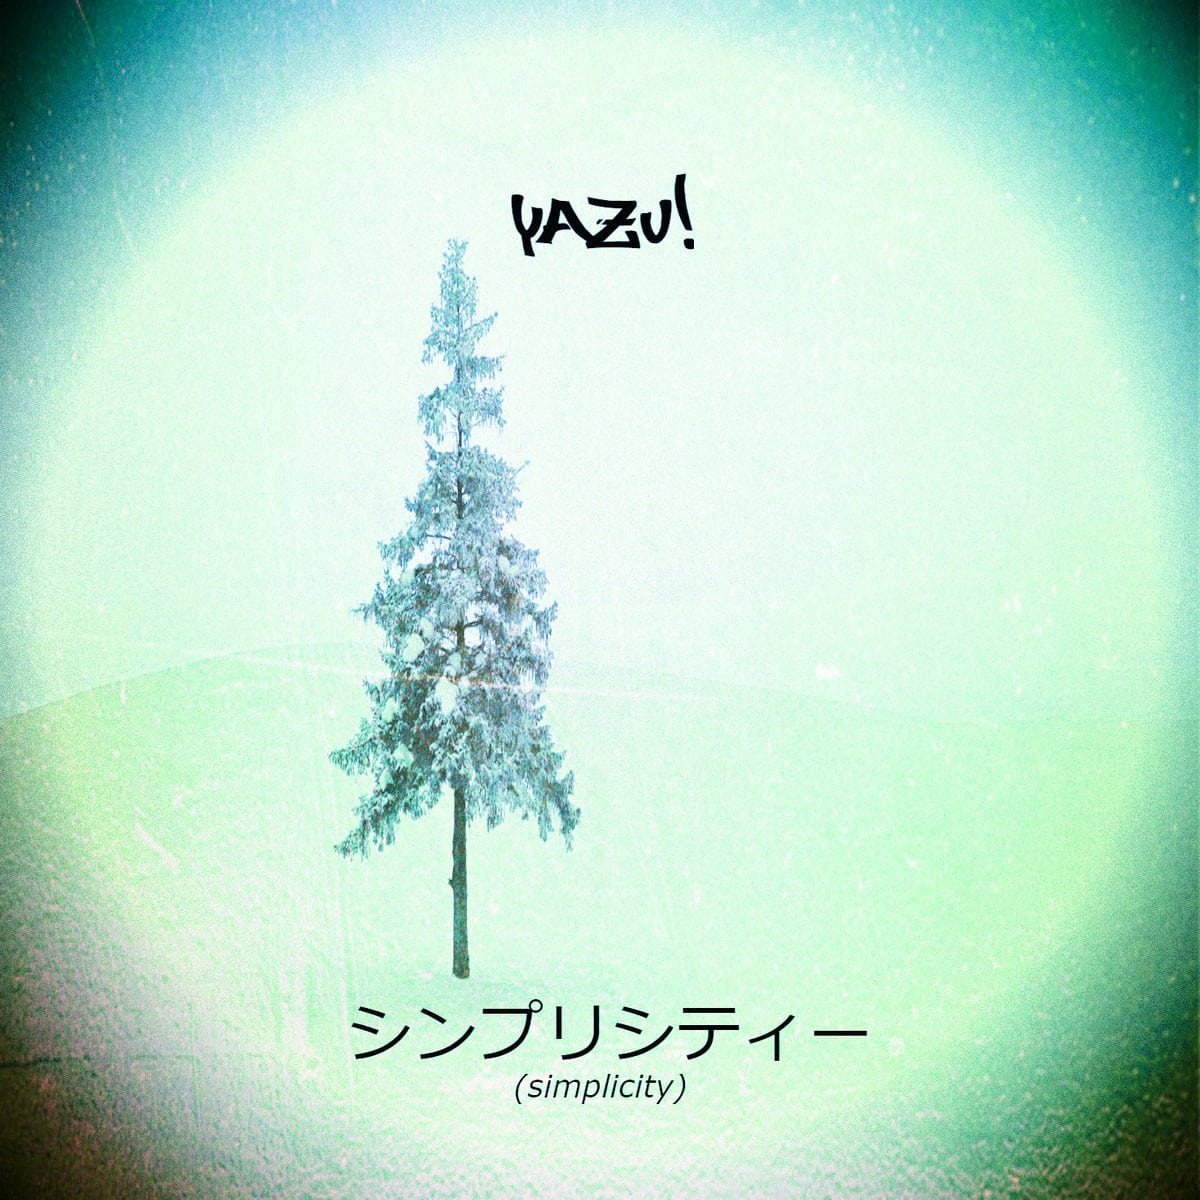 YAZU! - "Simplicity" (Release)